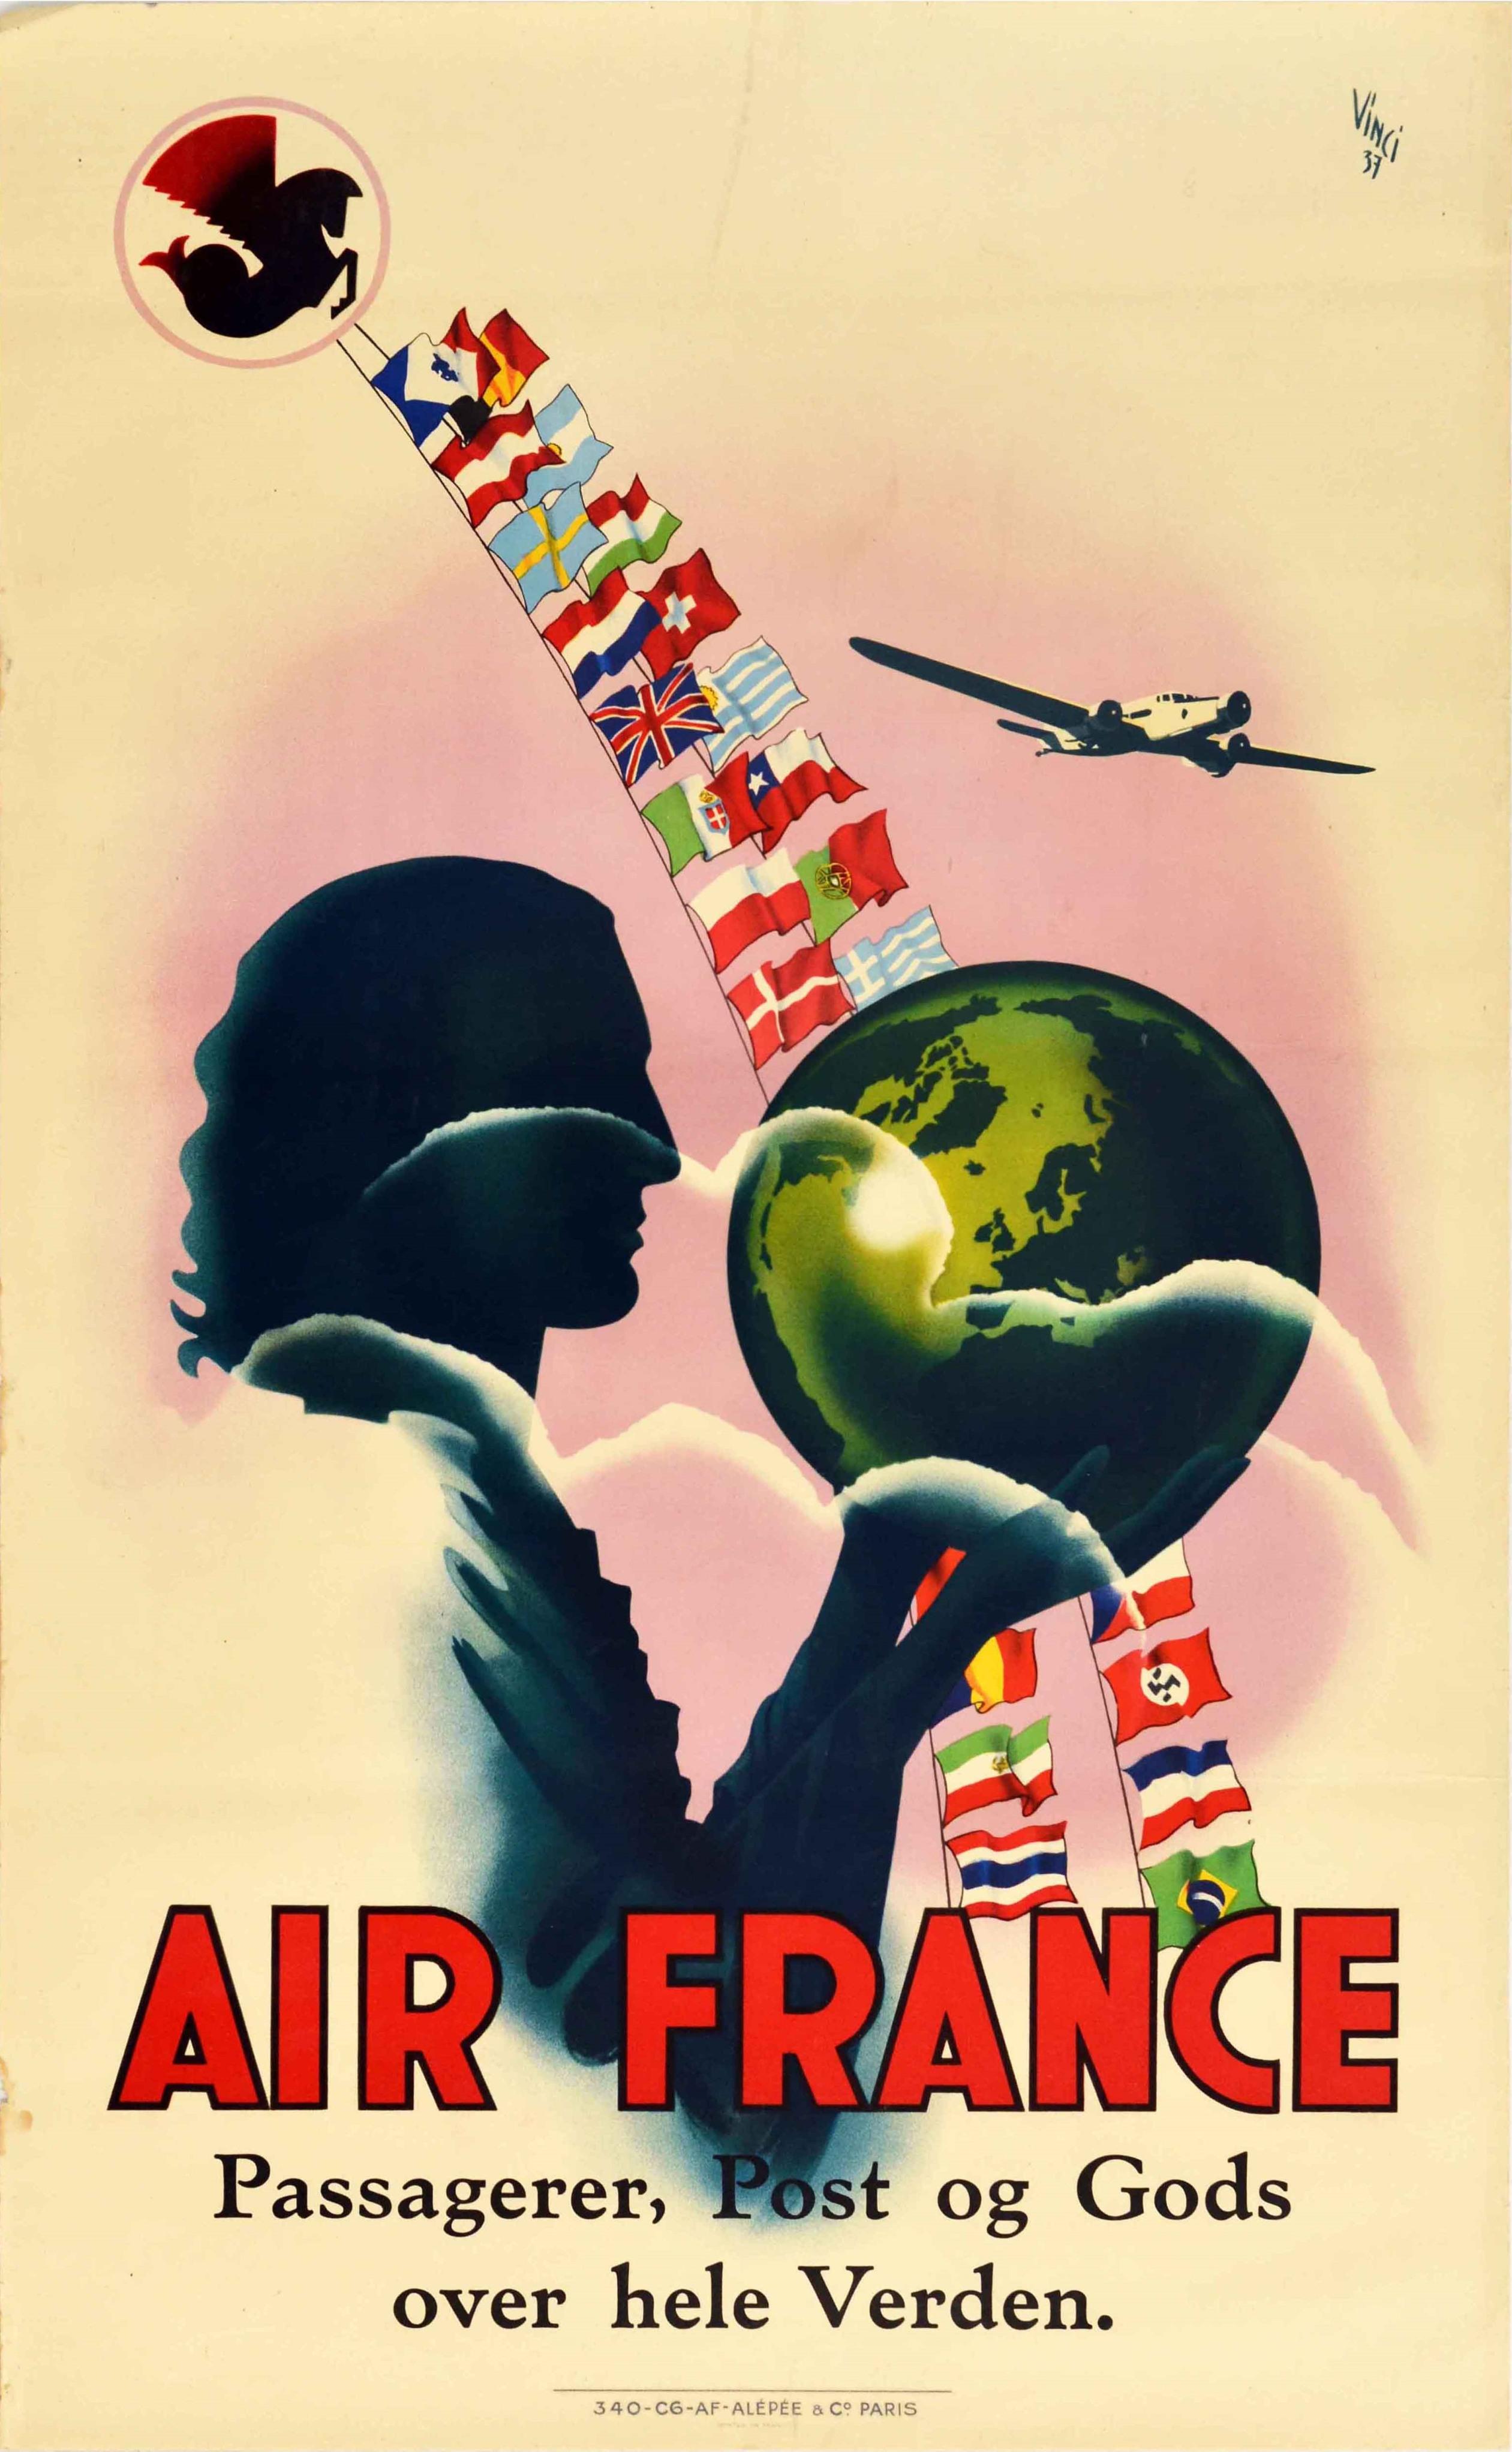 Affiche originale vintage d'Air France annonçant Passagerer, Post og Gods over hele Verden / Passagers, courrier et fret dans le monde entier. Motif Art déco coloré représentant la silhouette d'une personne tenant un globe terrestre devant un